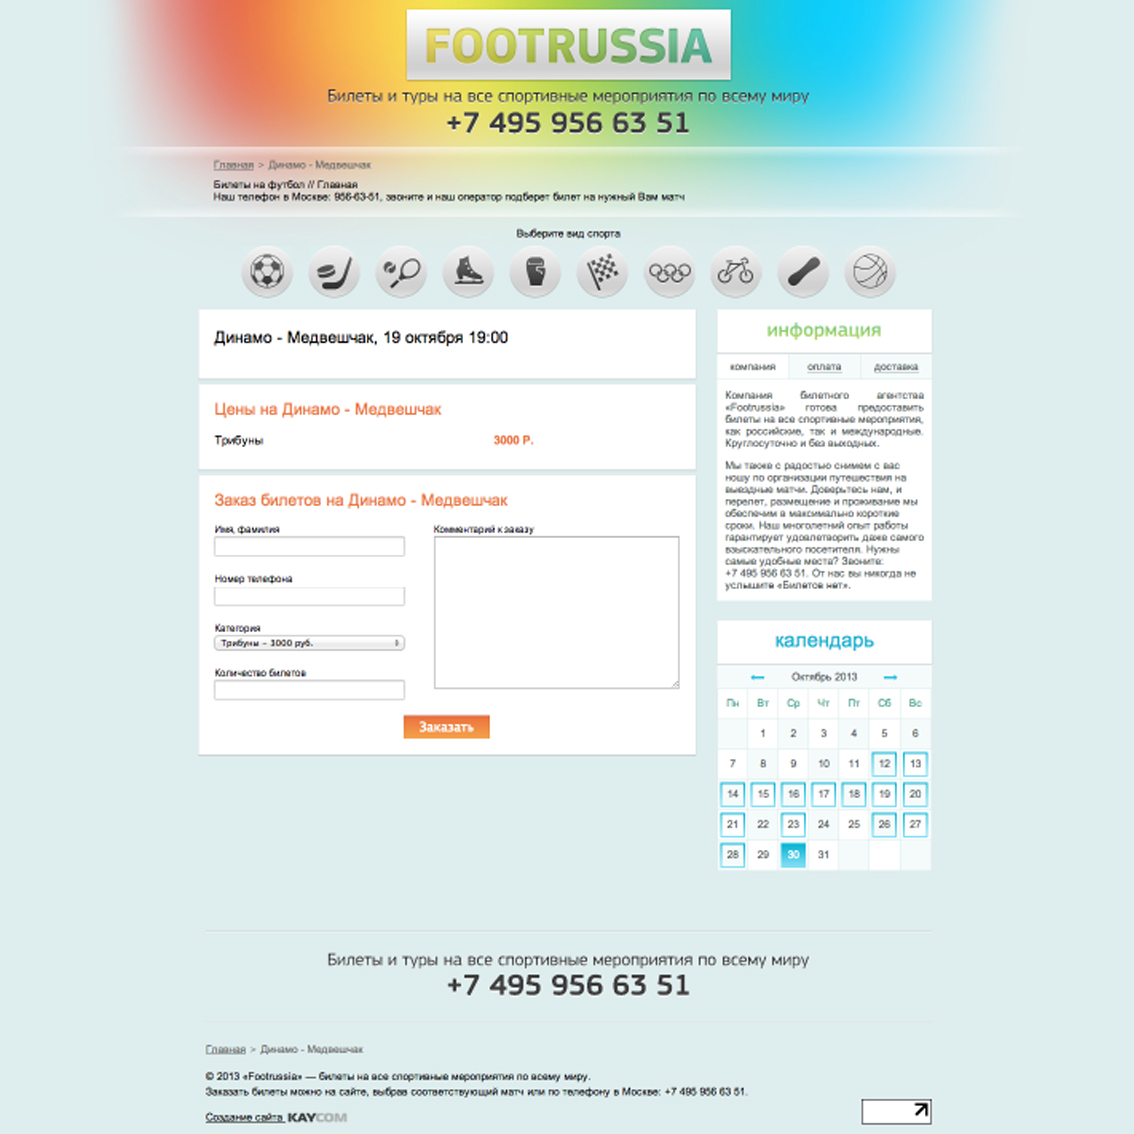 интернет-витрина спортивных мероприятий http://footrussia.ru 